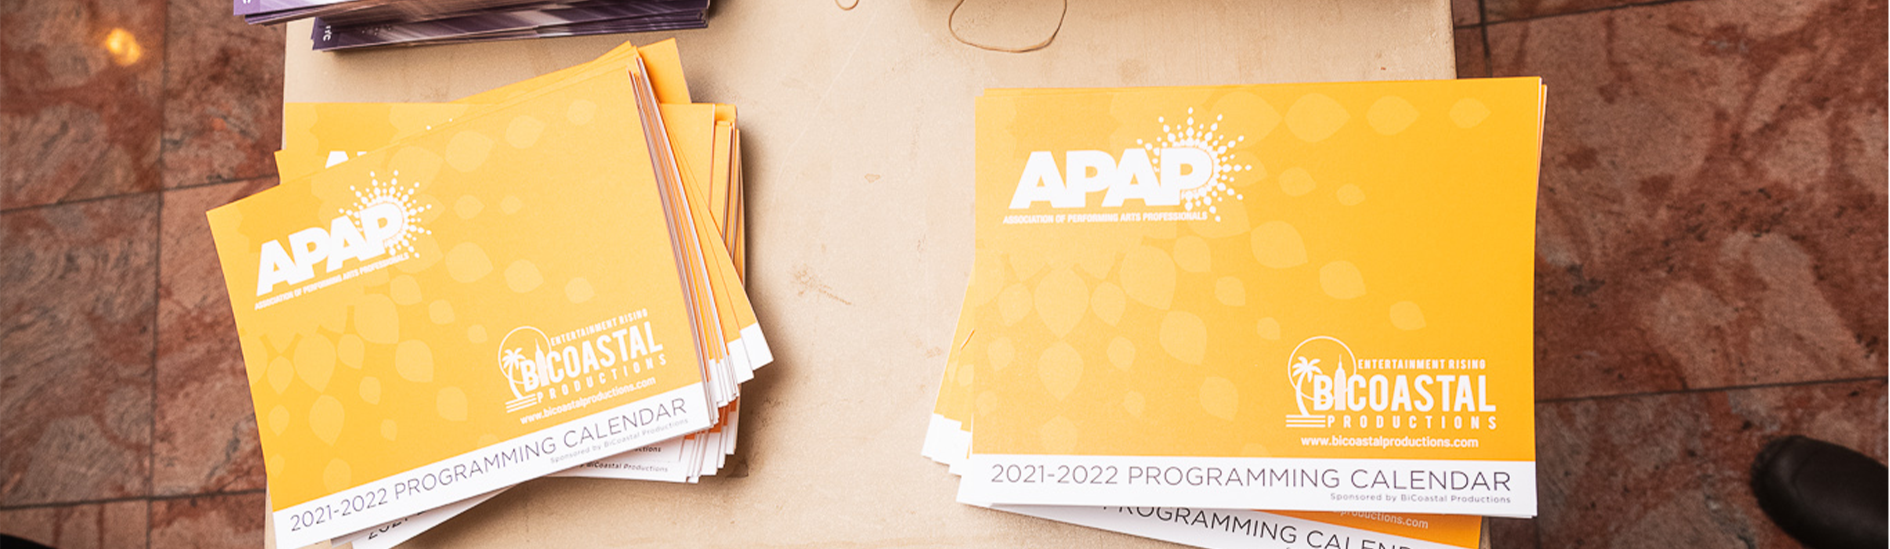 APAPNYC Programming Calendar by Adam Kissick/APAP 